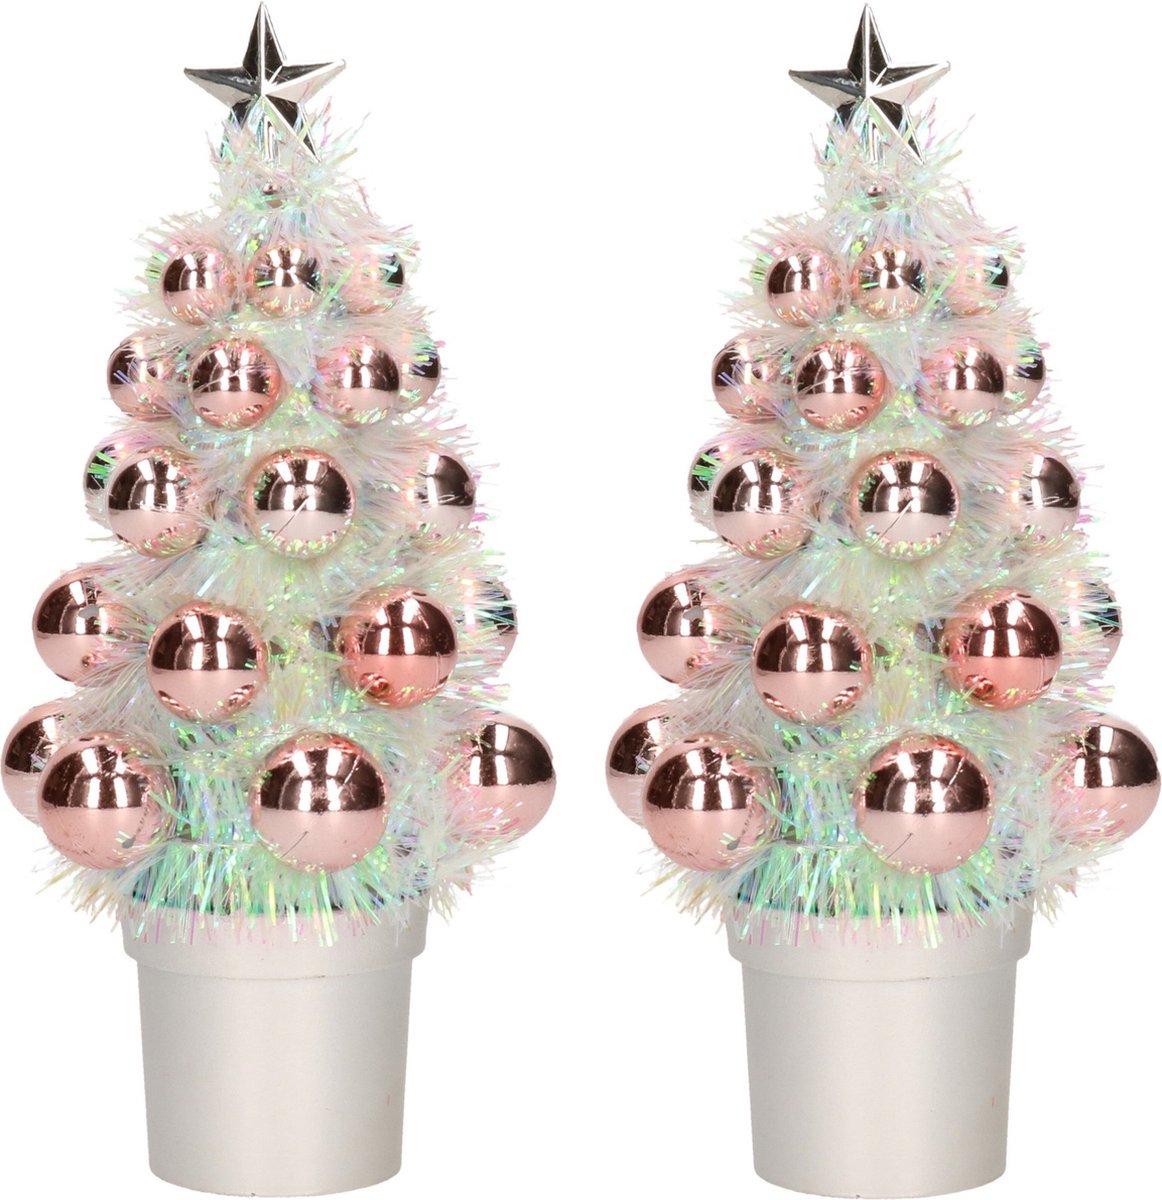 4x Mini kunst kerstboompje zalm roze met kerstballen 19 cm - Kerstversiering - Kunstboompje